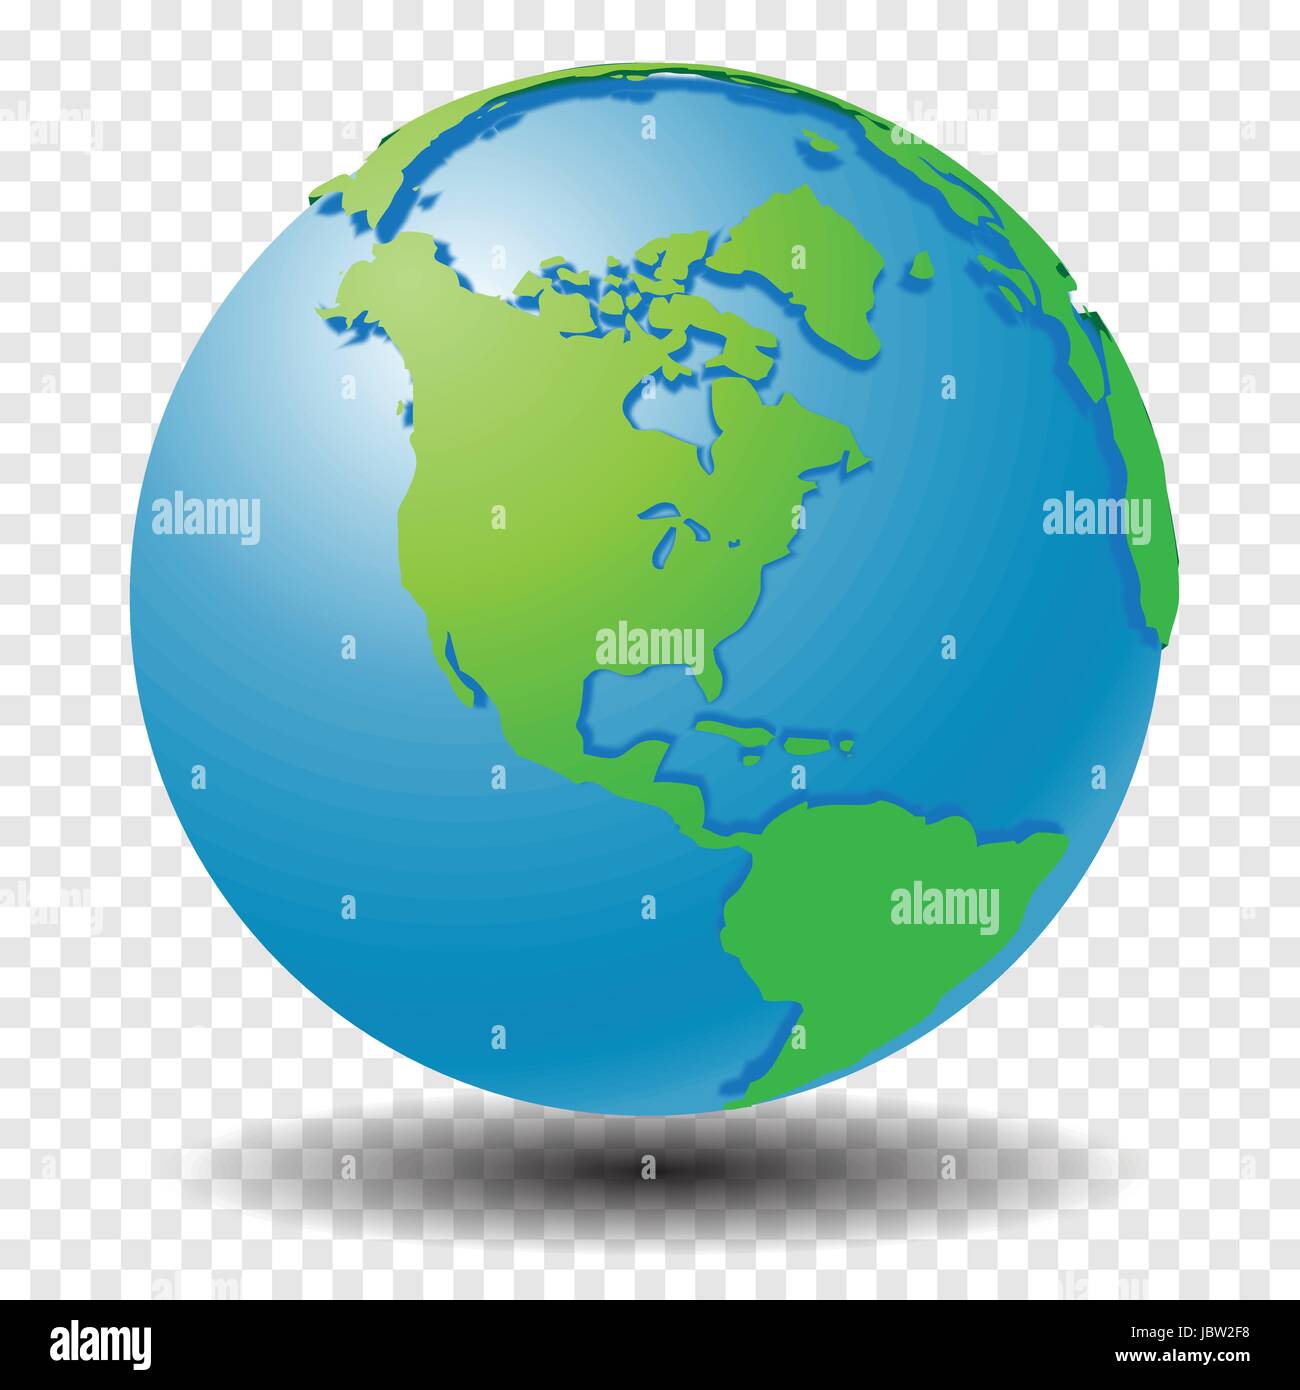 Globus mit Weltkarte, Region Asien mit glatten Vektor Schatten auf Transparenzraster - Vektor-illustration Stock Vektor